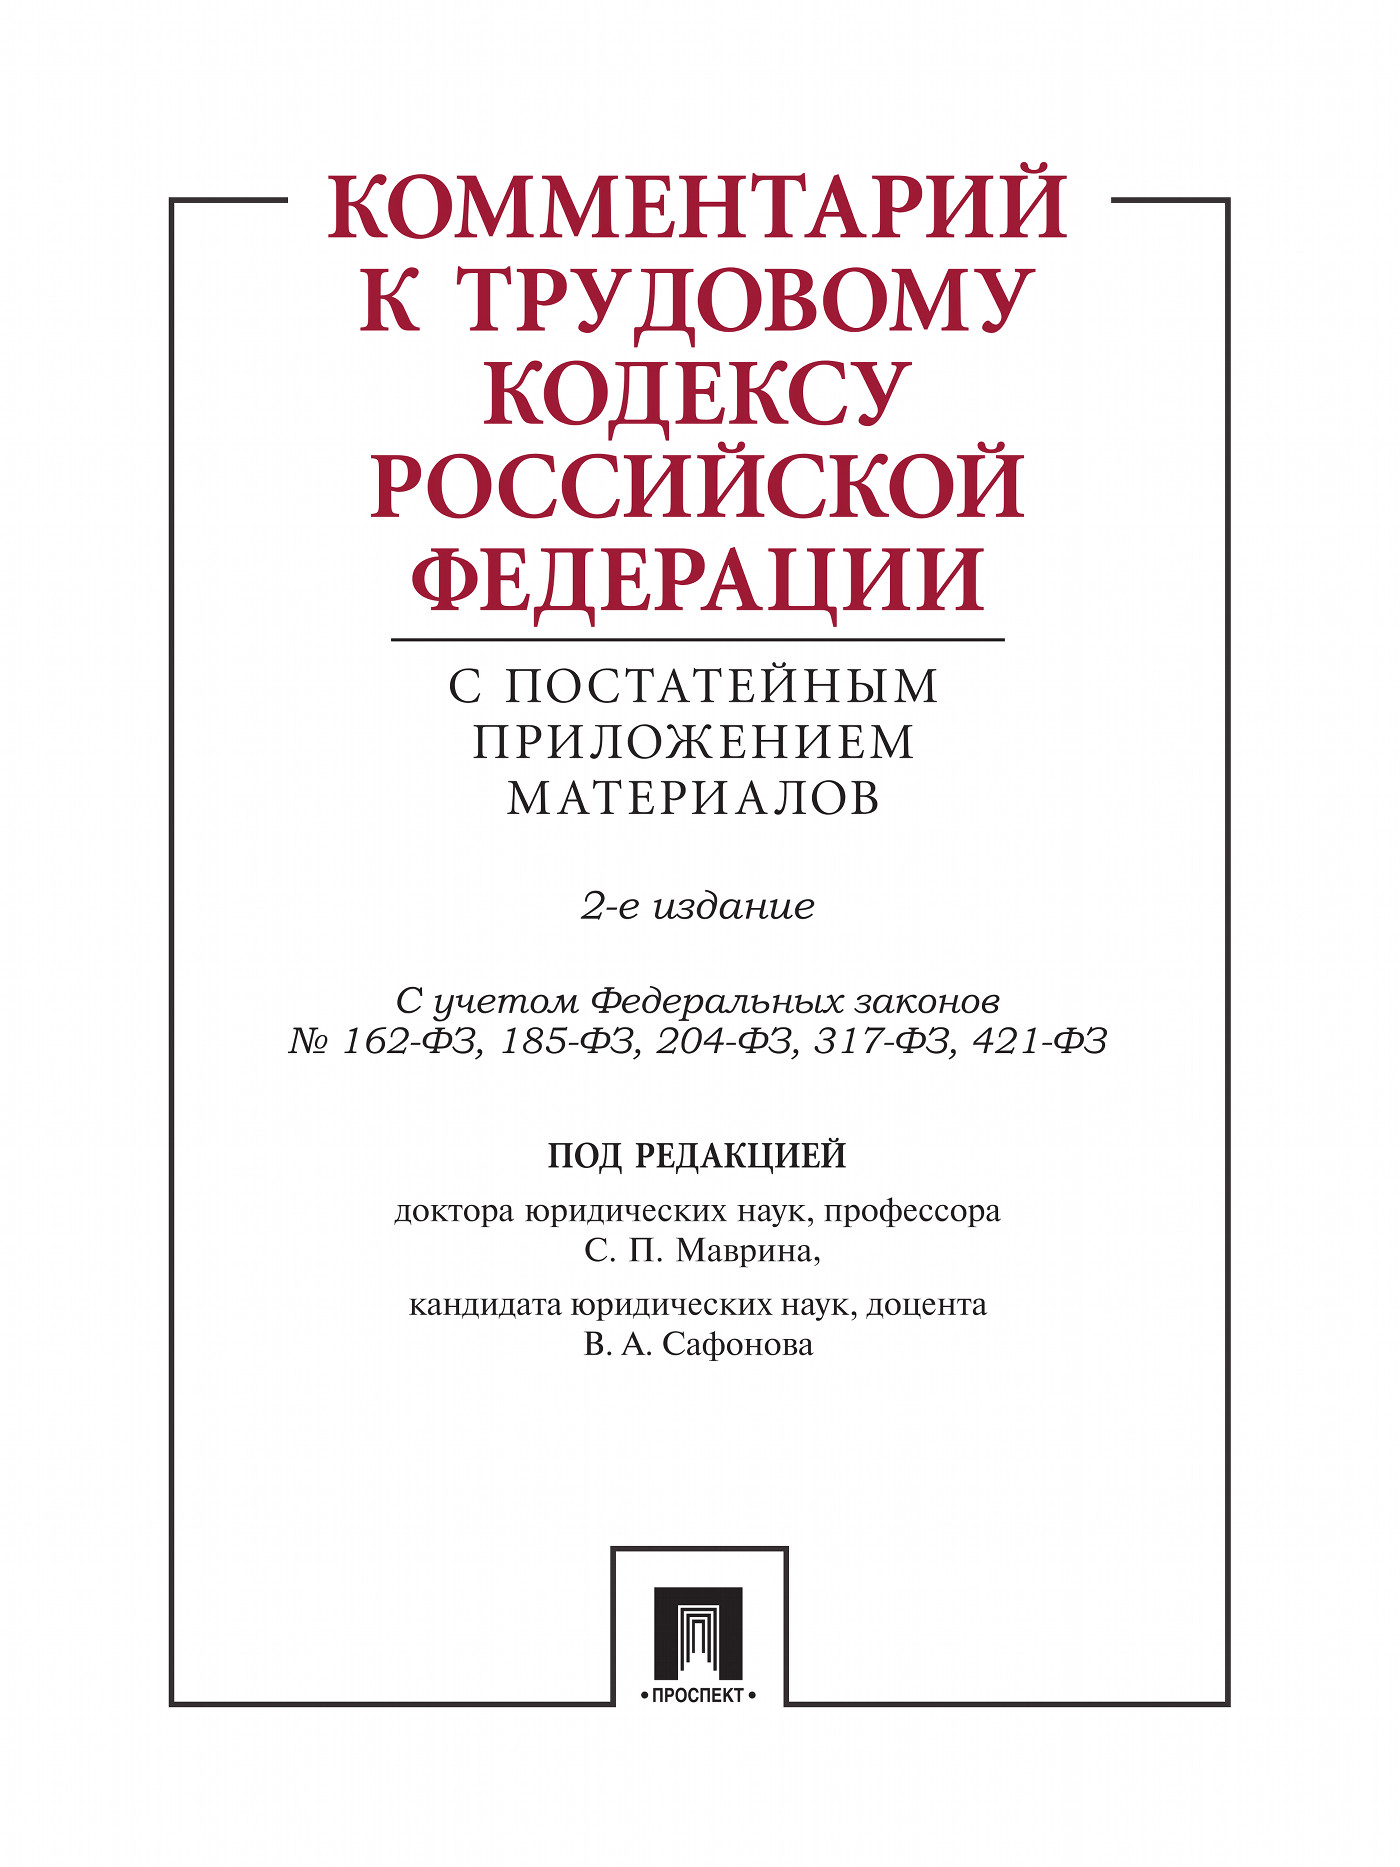 Комментарий к Трудовому кодексу Российской Федерации с постатейным приложением материалов. 2-е издание